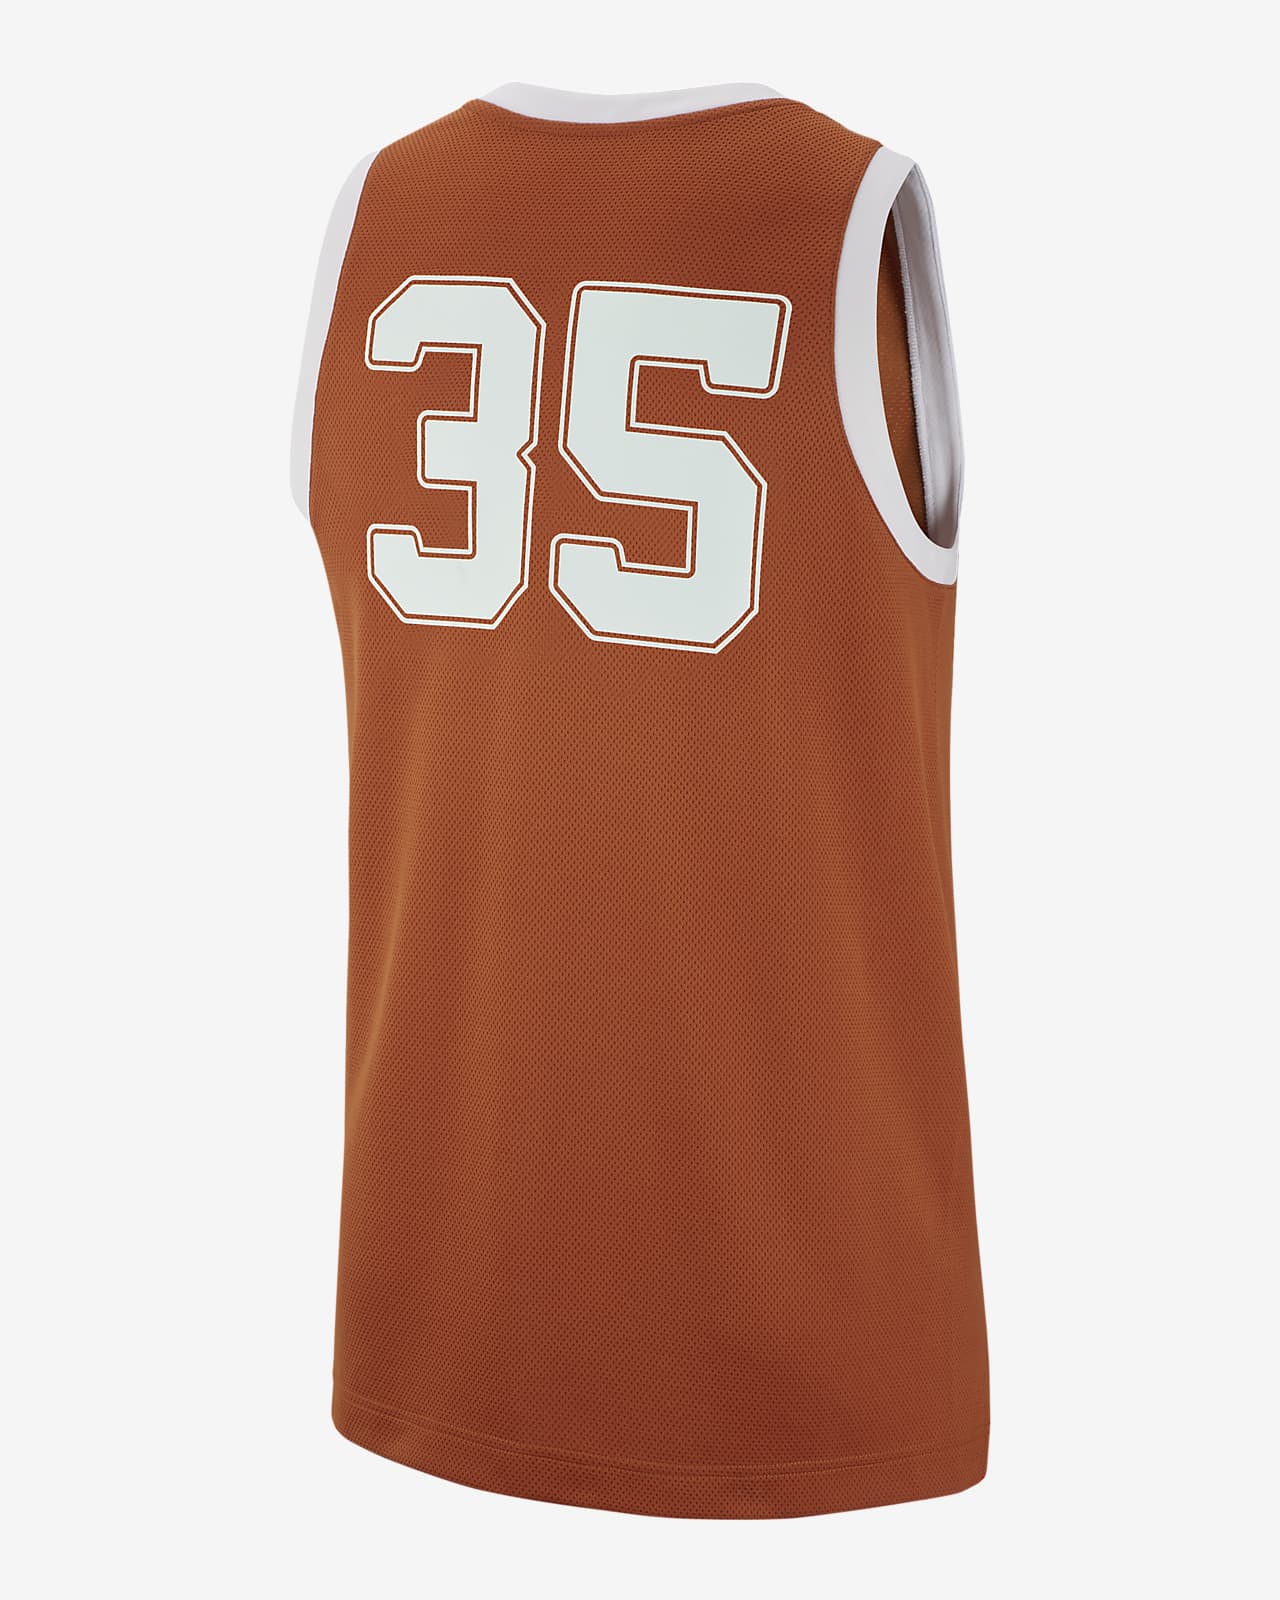 Texas Longhorns NBA jersey